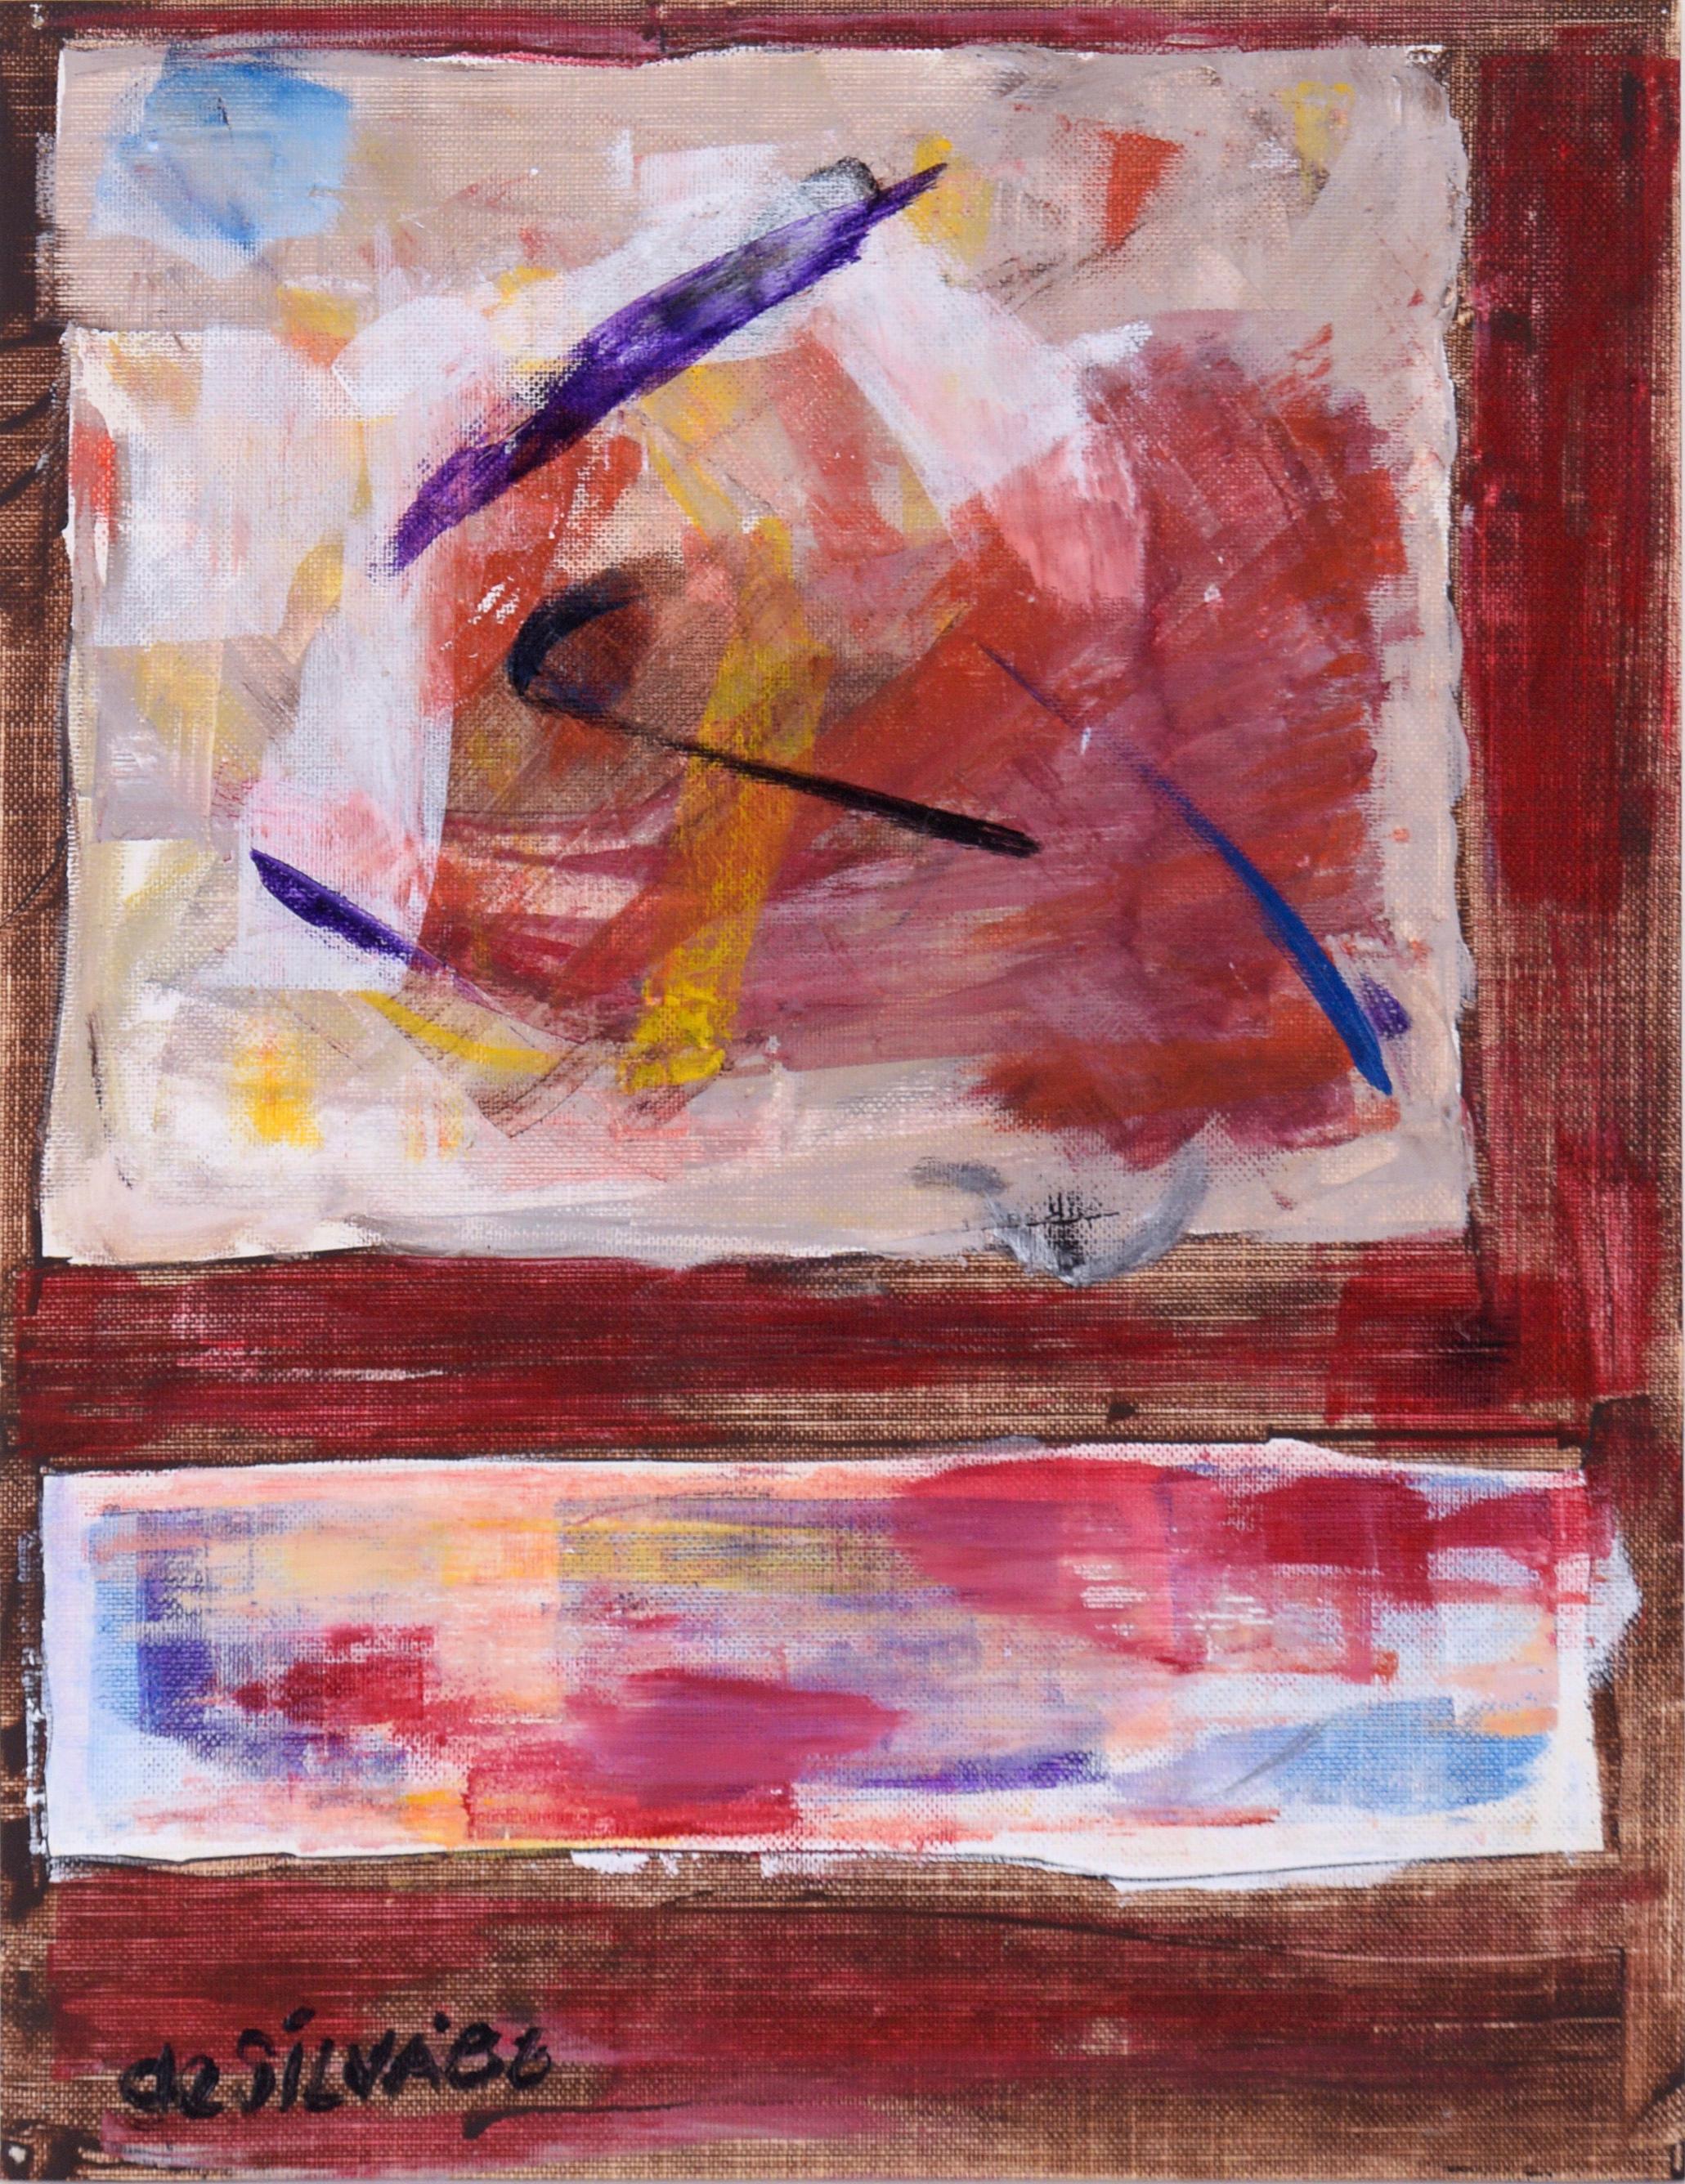 Ricardo de Silva Abstract Painting – Farbblöcke auf einem roten Feld in Acryl auf strukturiertem Papier